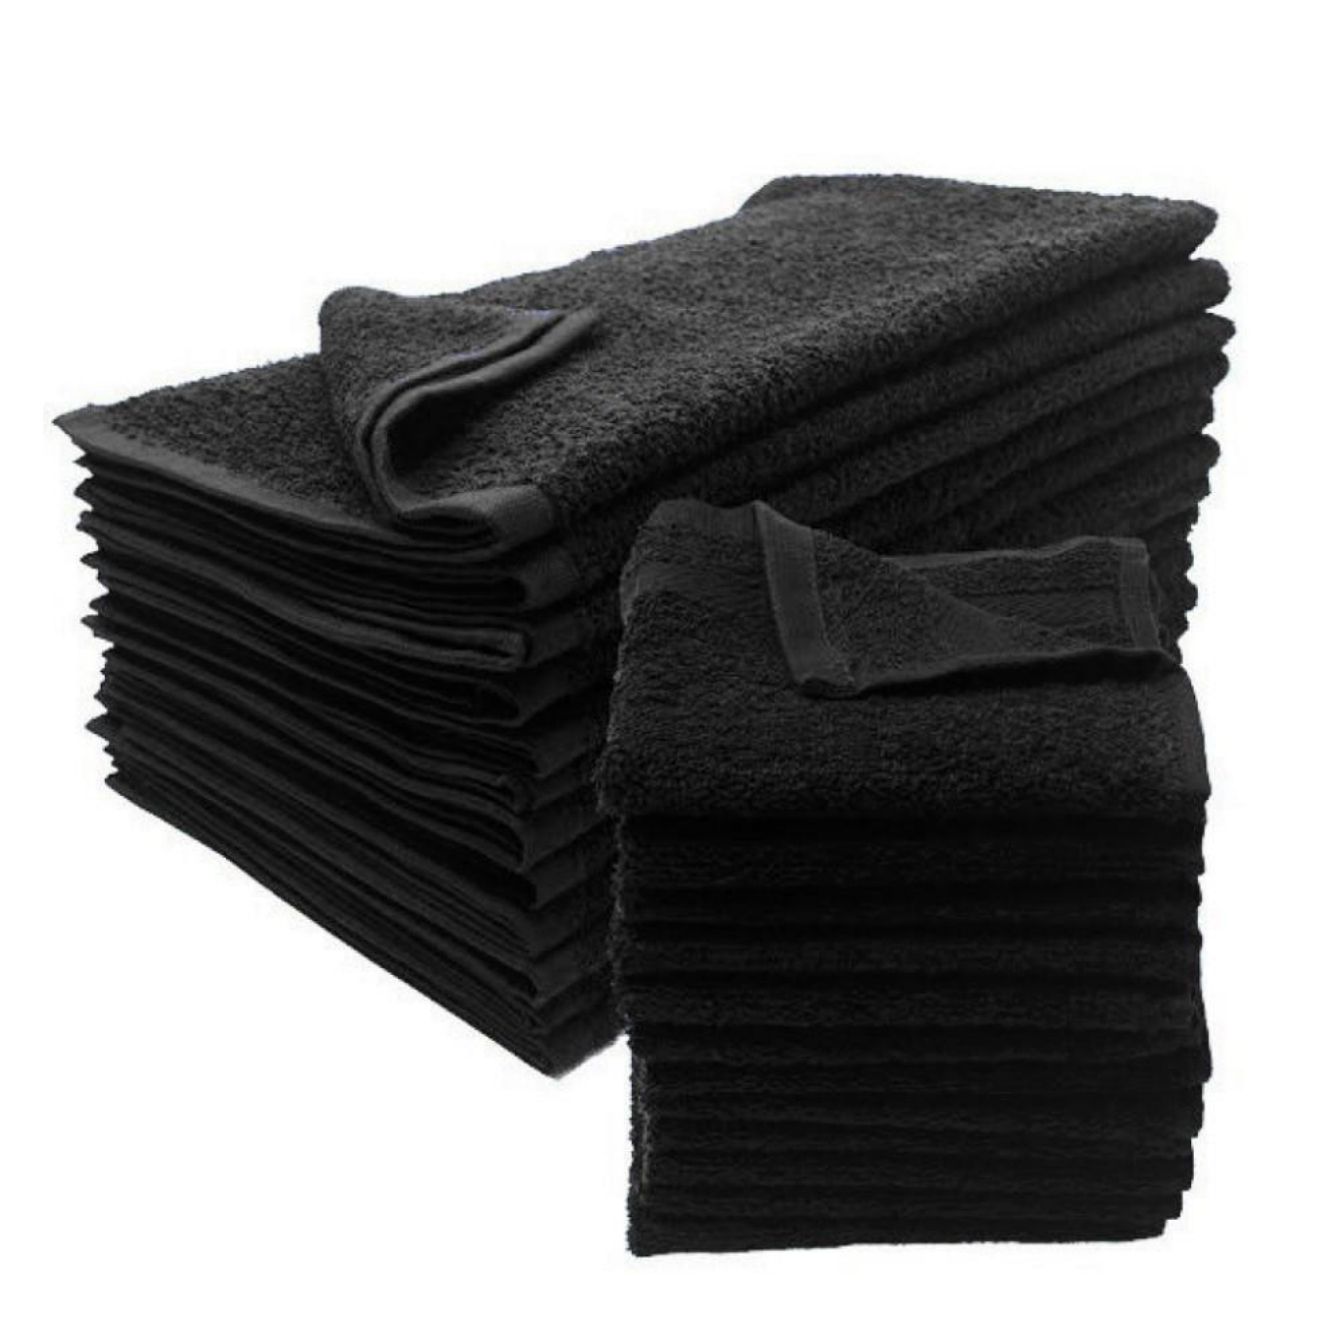 Черные полотенца для ванной. Темные полотенца. Набор черных полотенец. Полотенце для рук чёрный. Полотенце черный Блэк.